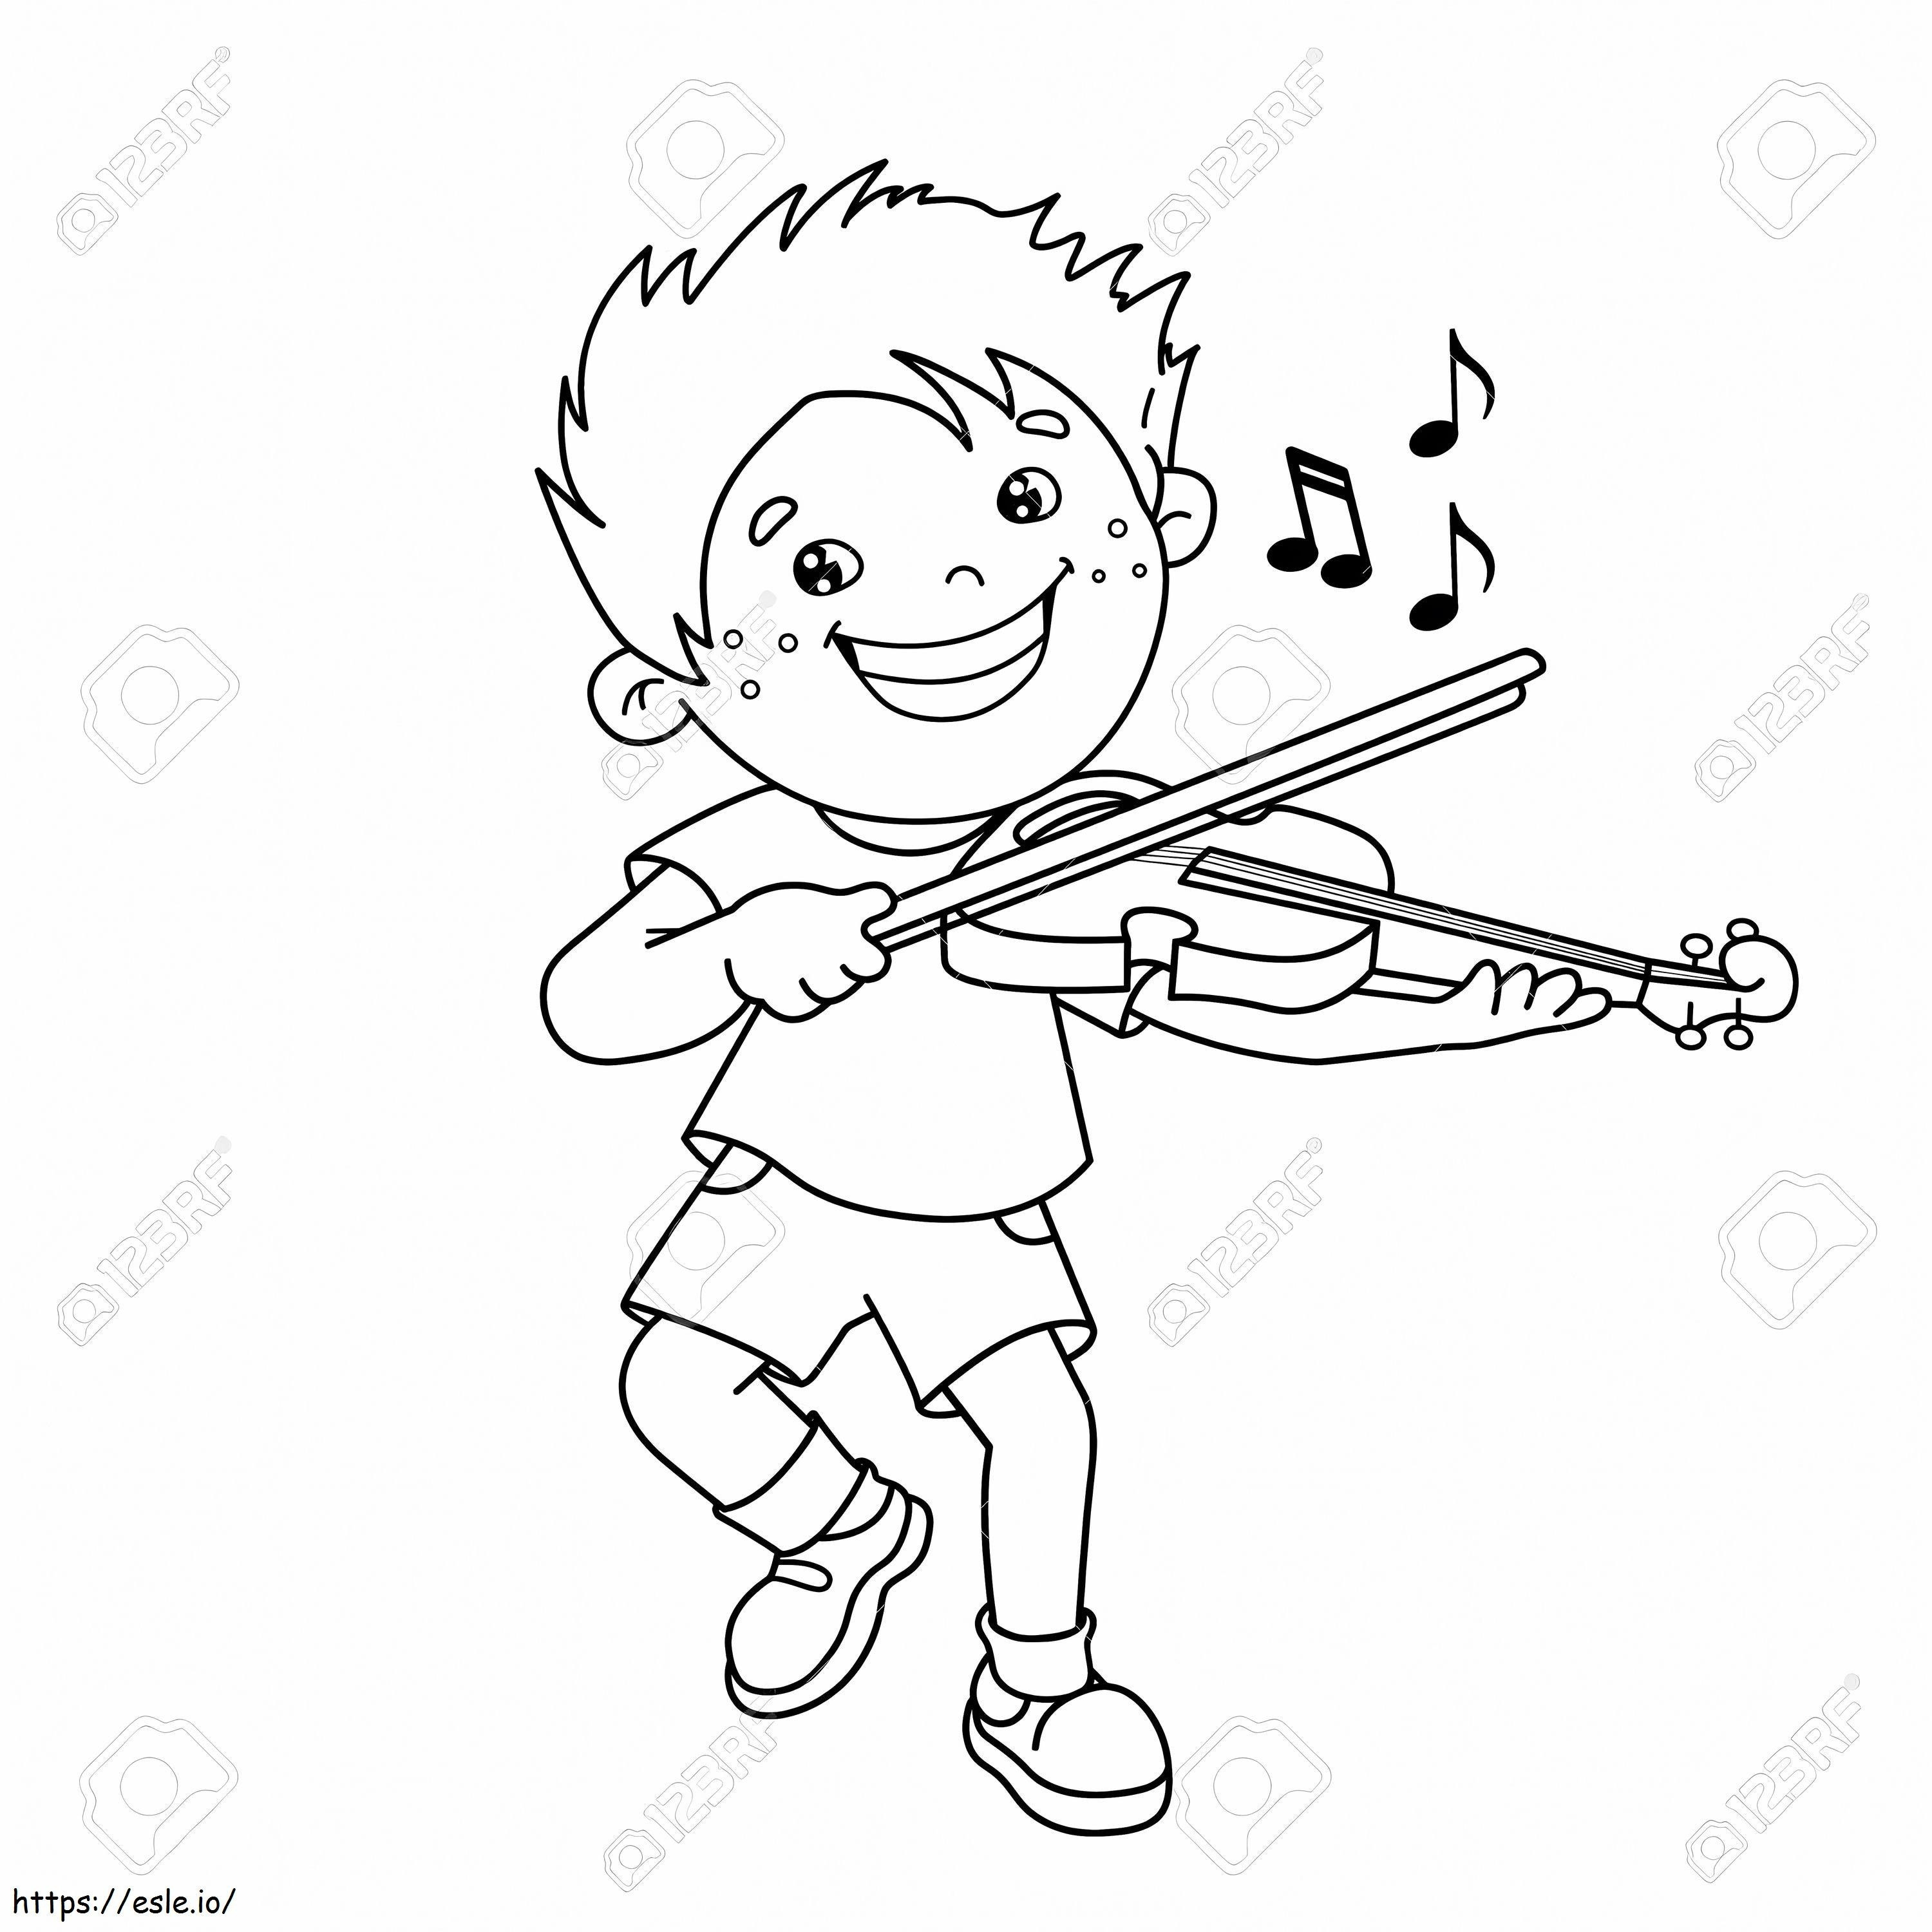 1543026113 75069501 Zarys rysunkowego chłopca grającego na instrumentach muzycznych na skrzypcach Kolorowanka dla kolorowanka